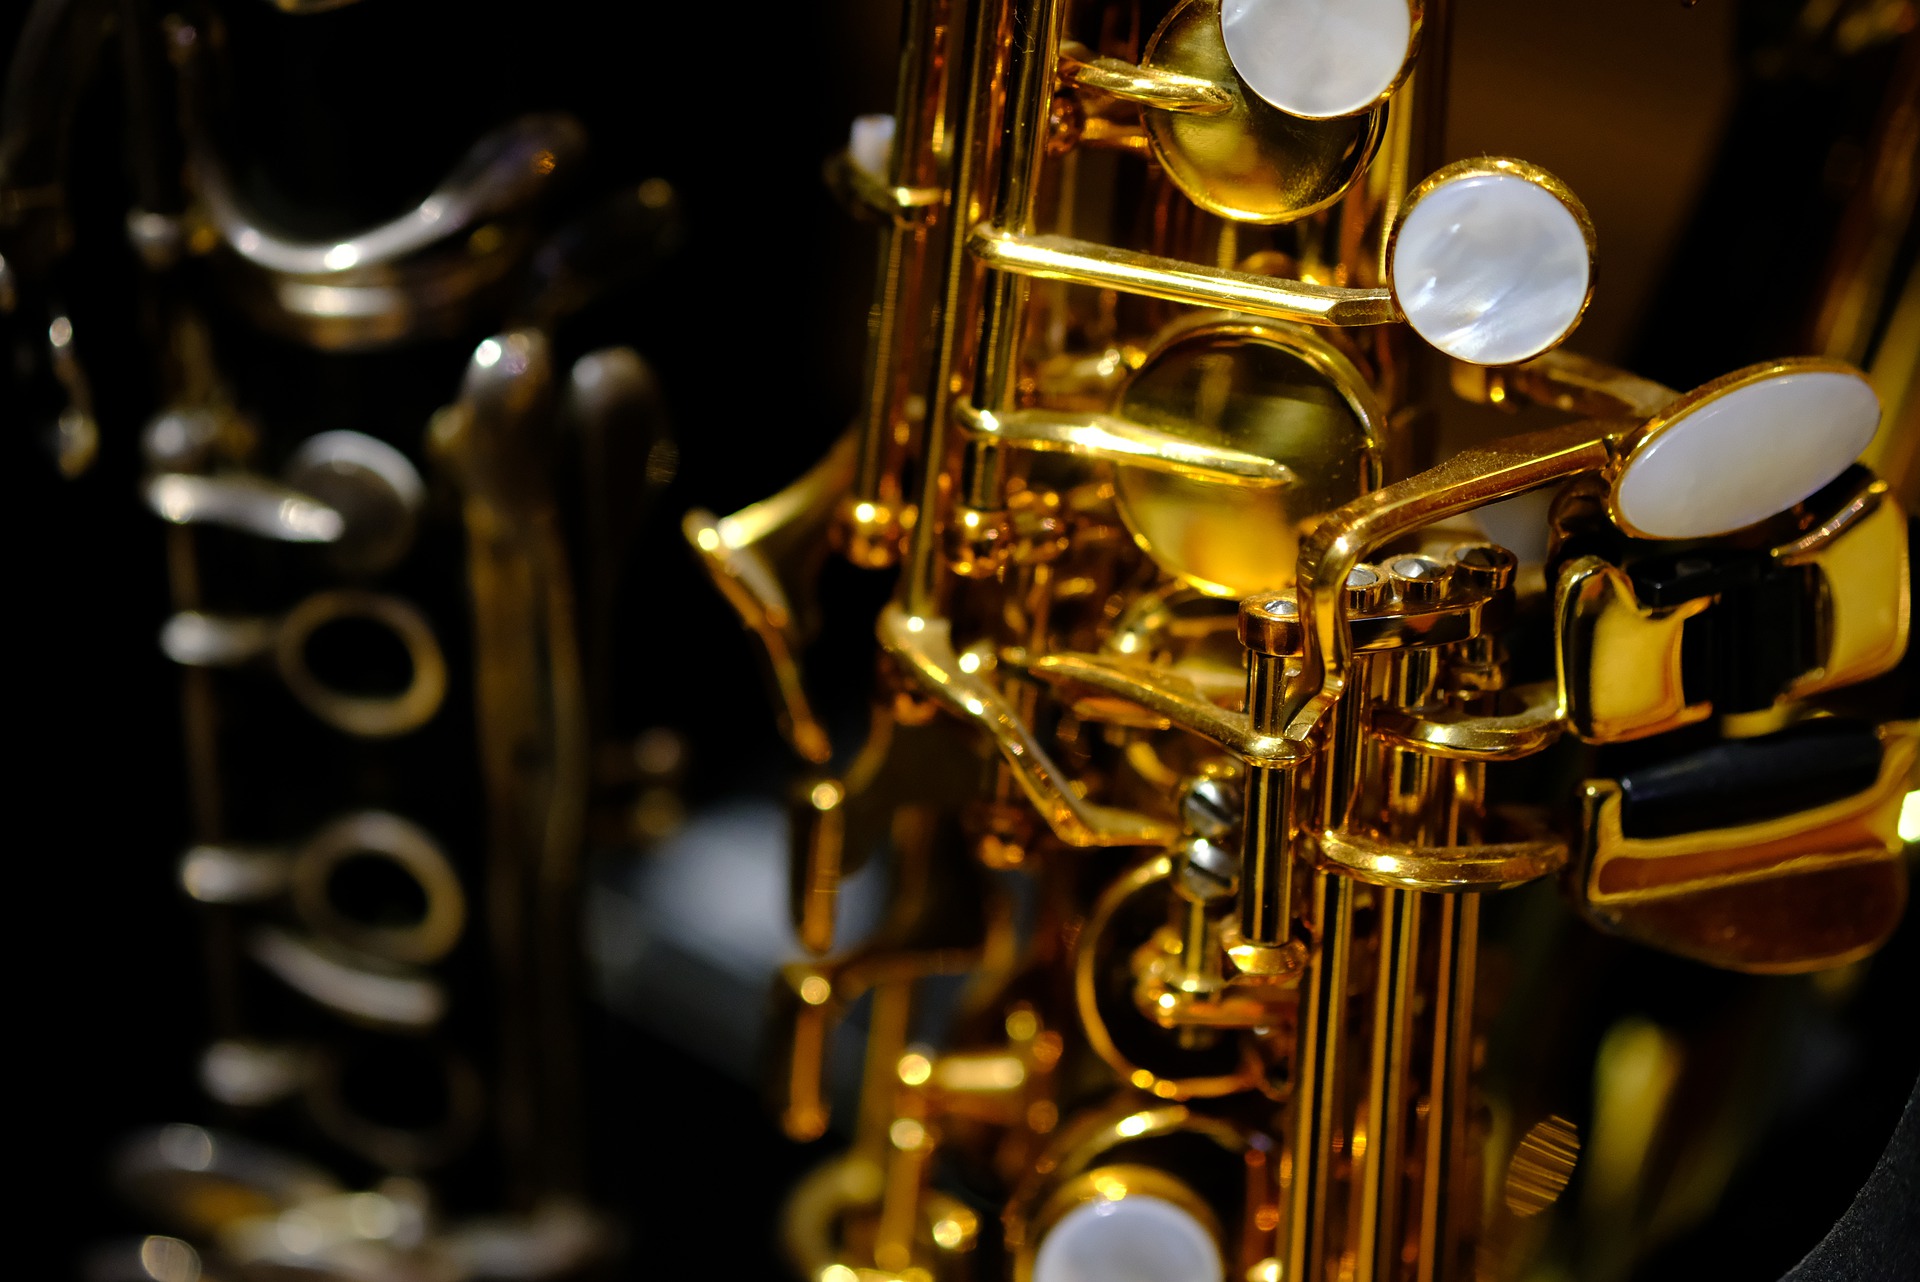 Джазовая фантазия: музыкальный концерт организуют в «Светловке». Фото: pixabay.com